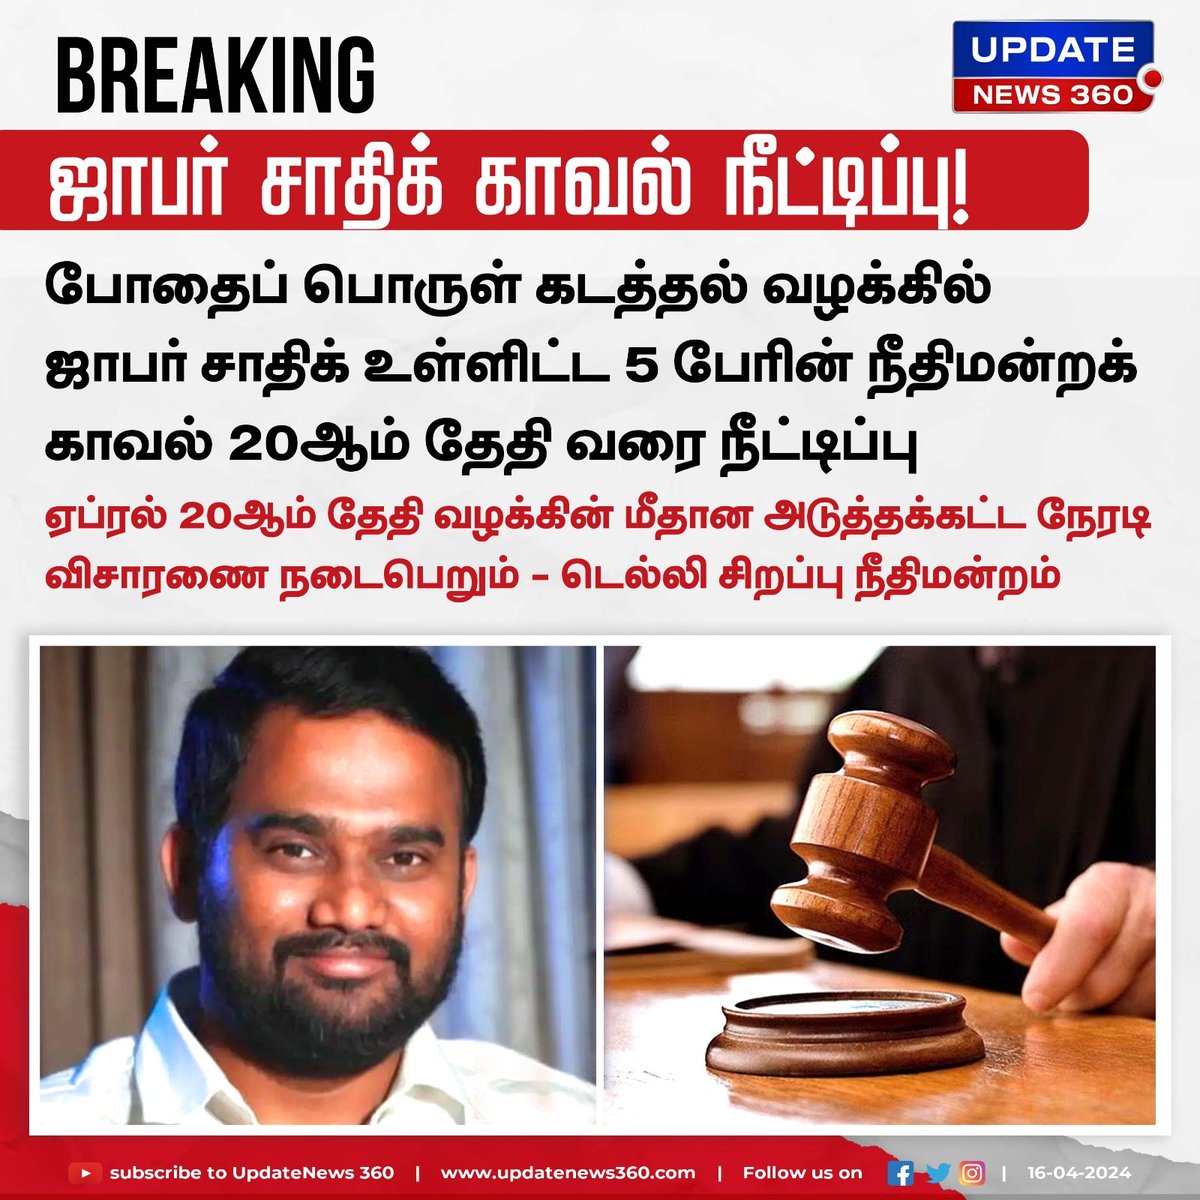 ஜாபர் சாதிக்கின் நீதிமன்ற காவல் நீட்டிப்பு..!!

#UpdateNews | #JafarSadiq | #ED | #DrugSmuggling | #CourtCustody | #TamilNews | #UpdateNews360